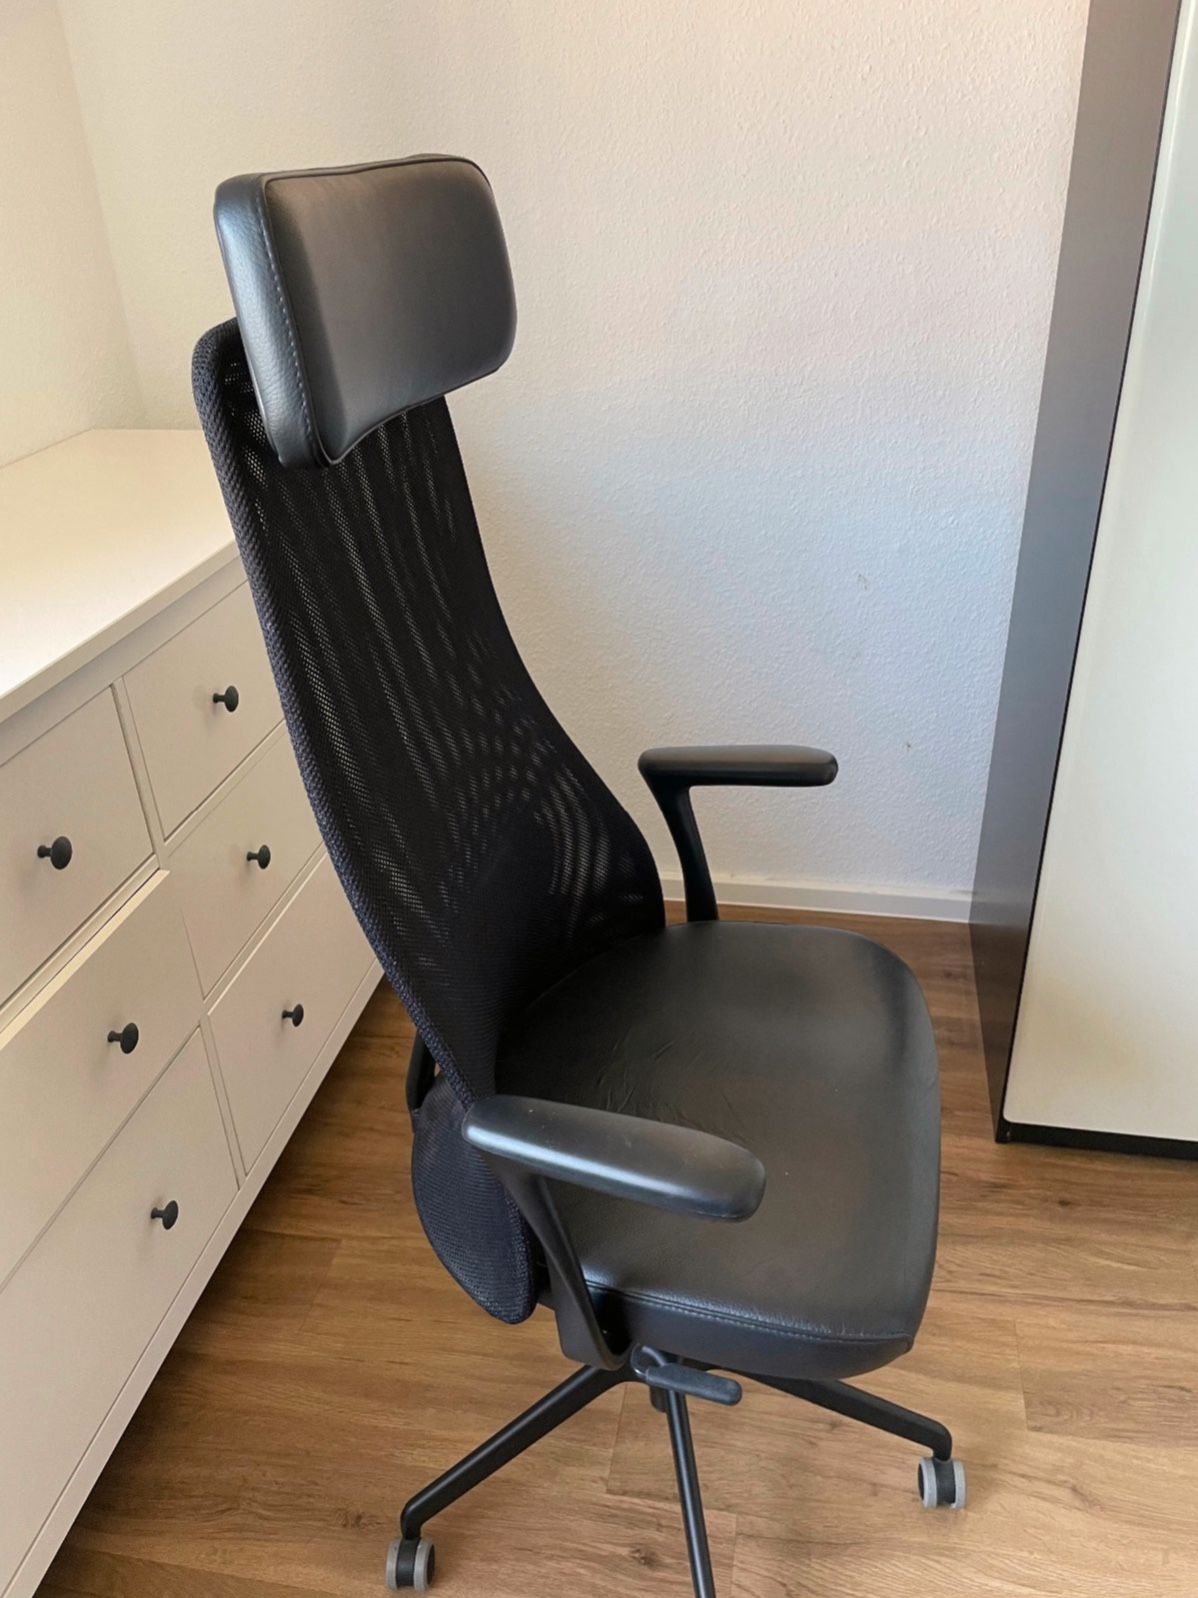 Ikea Jarvfjallet Çalışma Sandalyesi | DonanımHaber Forum